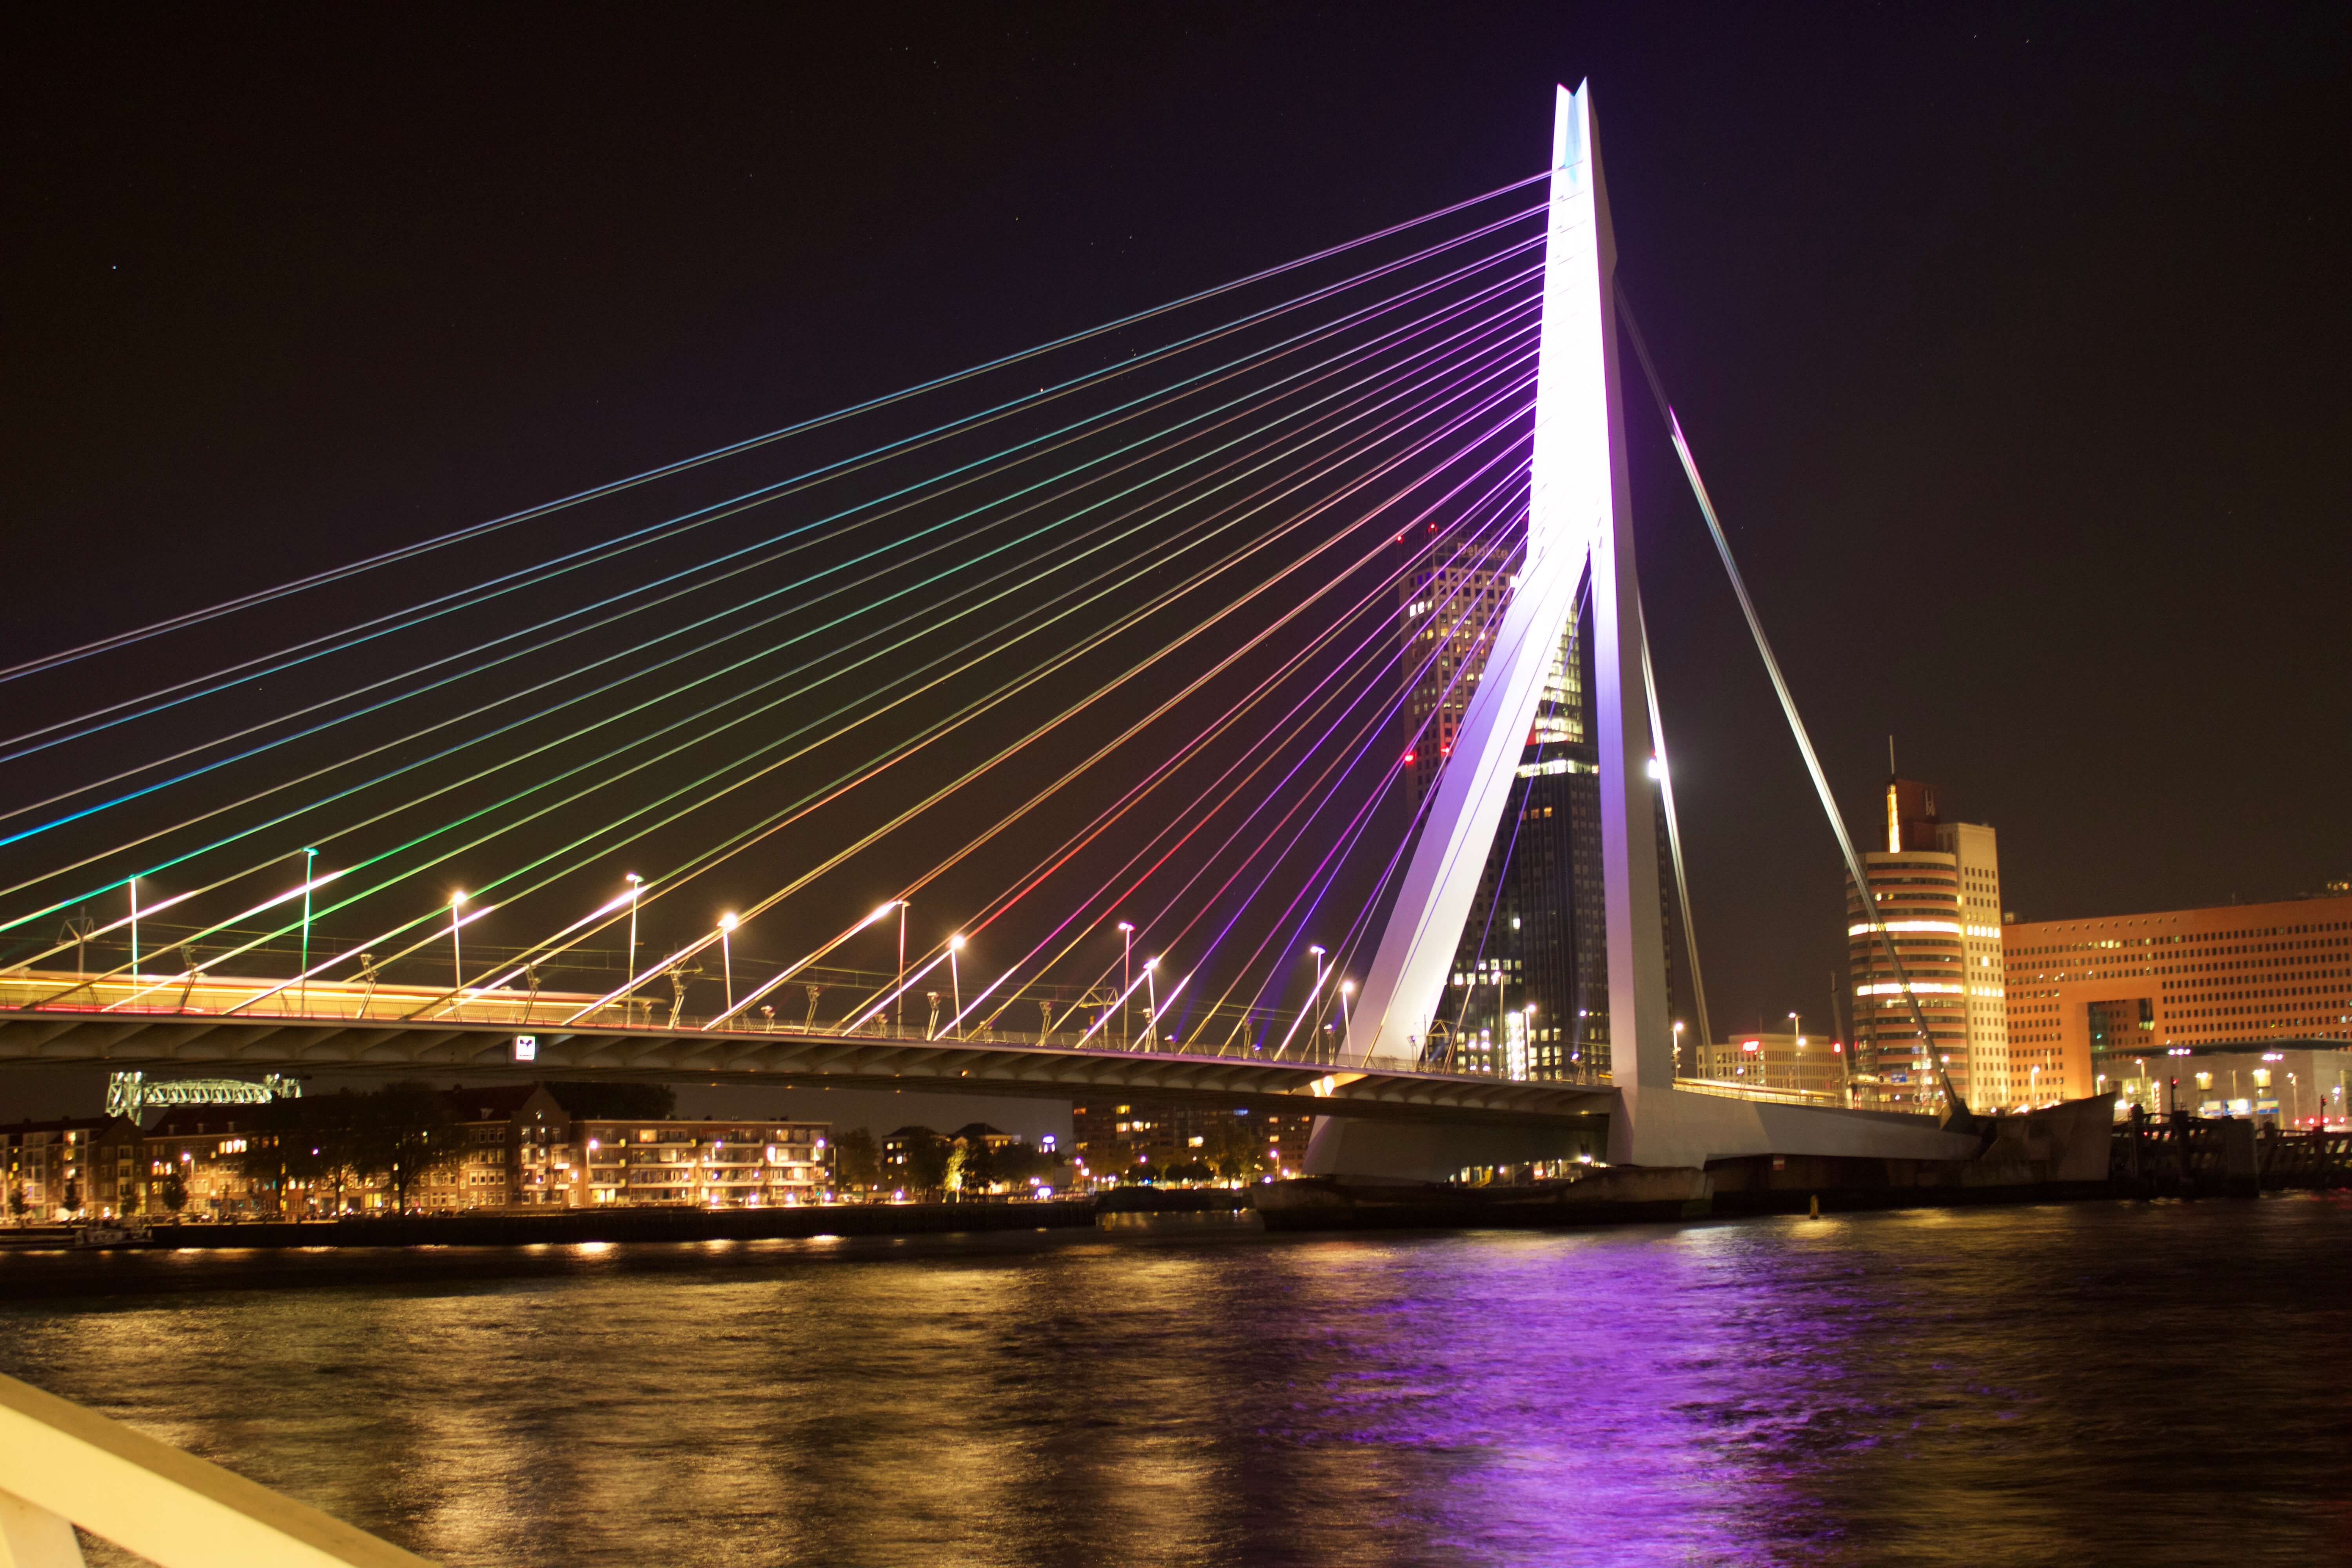 Vereinsreise Rotterdam, Erasmusbrücke Nacht